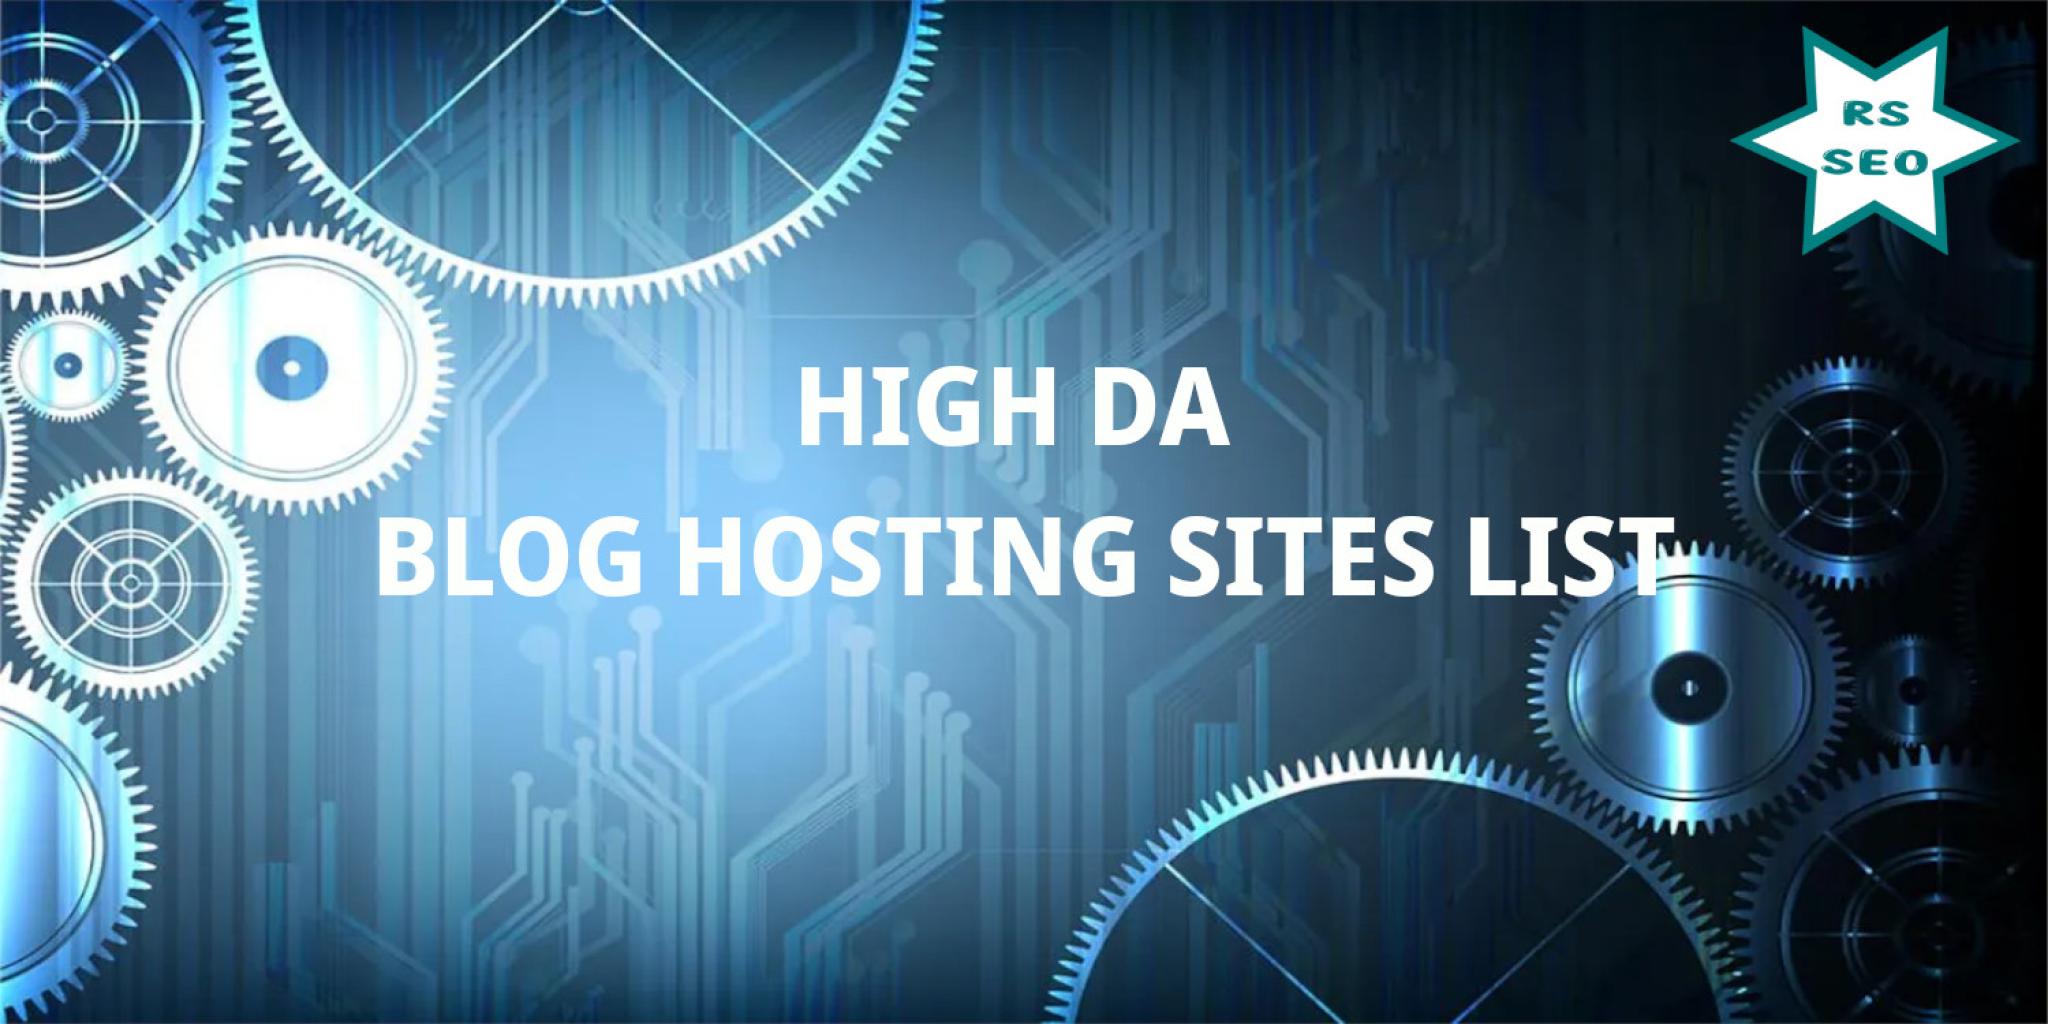 High DA Blog Hosting Sites List